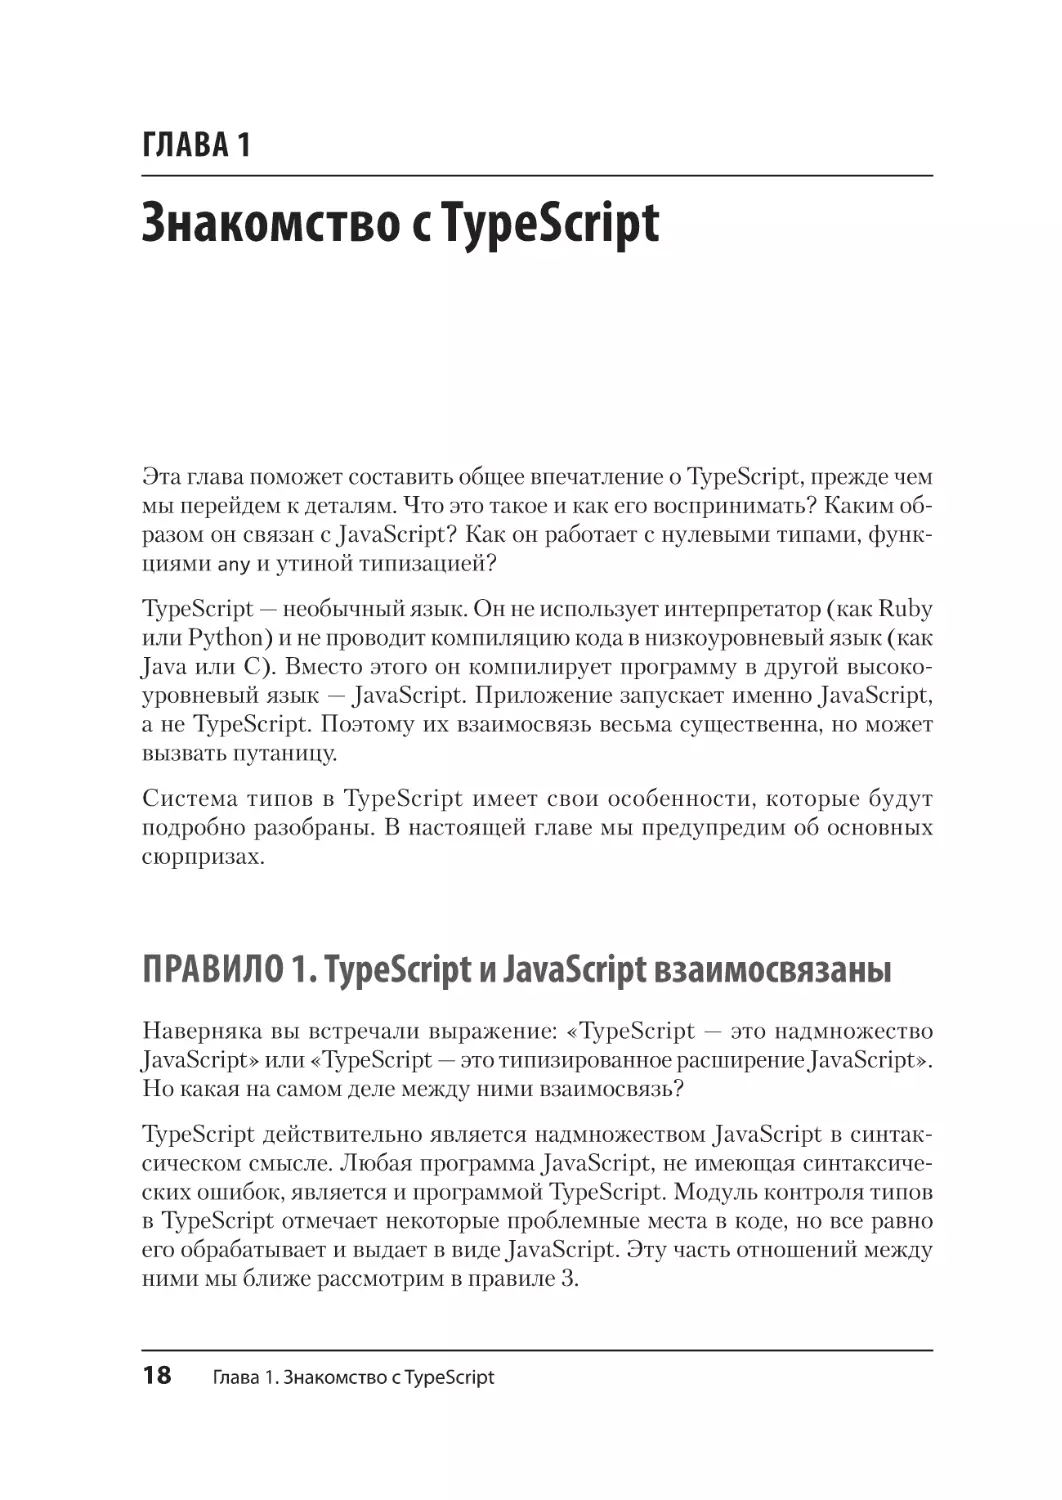 Глава 1. Знакомство с TypeScript
Правило 1. TypeScript и JavaScript взаимосвязаны